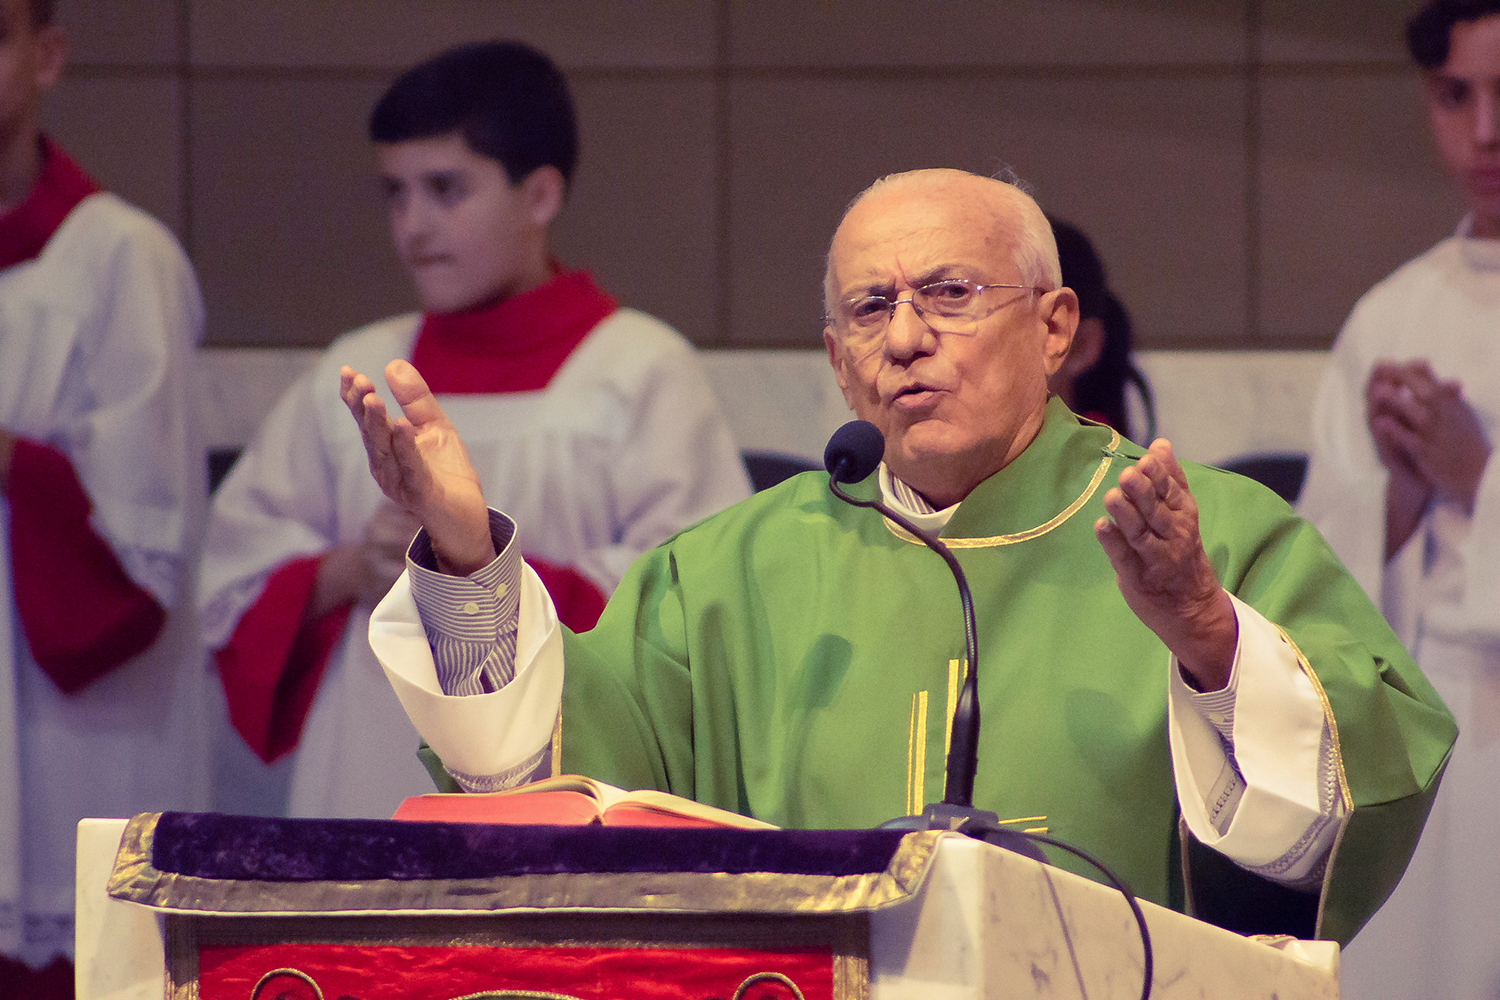 Faleceu o Diácono José Paulo Pati, da Arquidiocese de Brasília (DF)